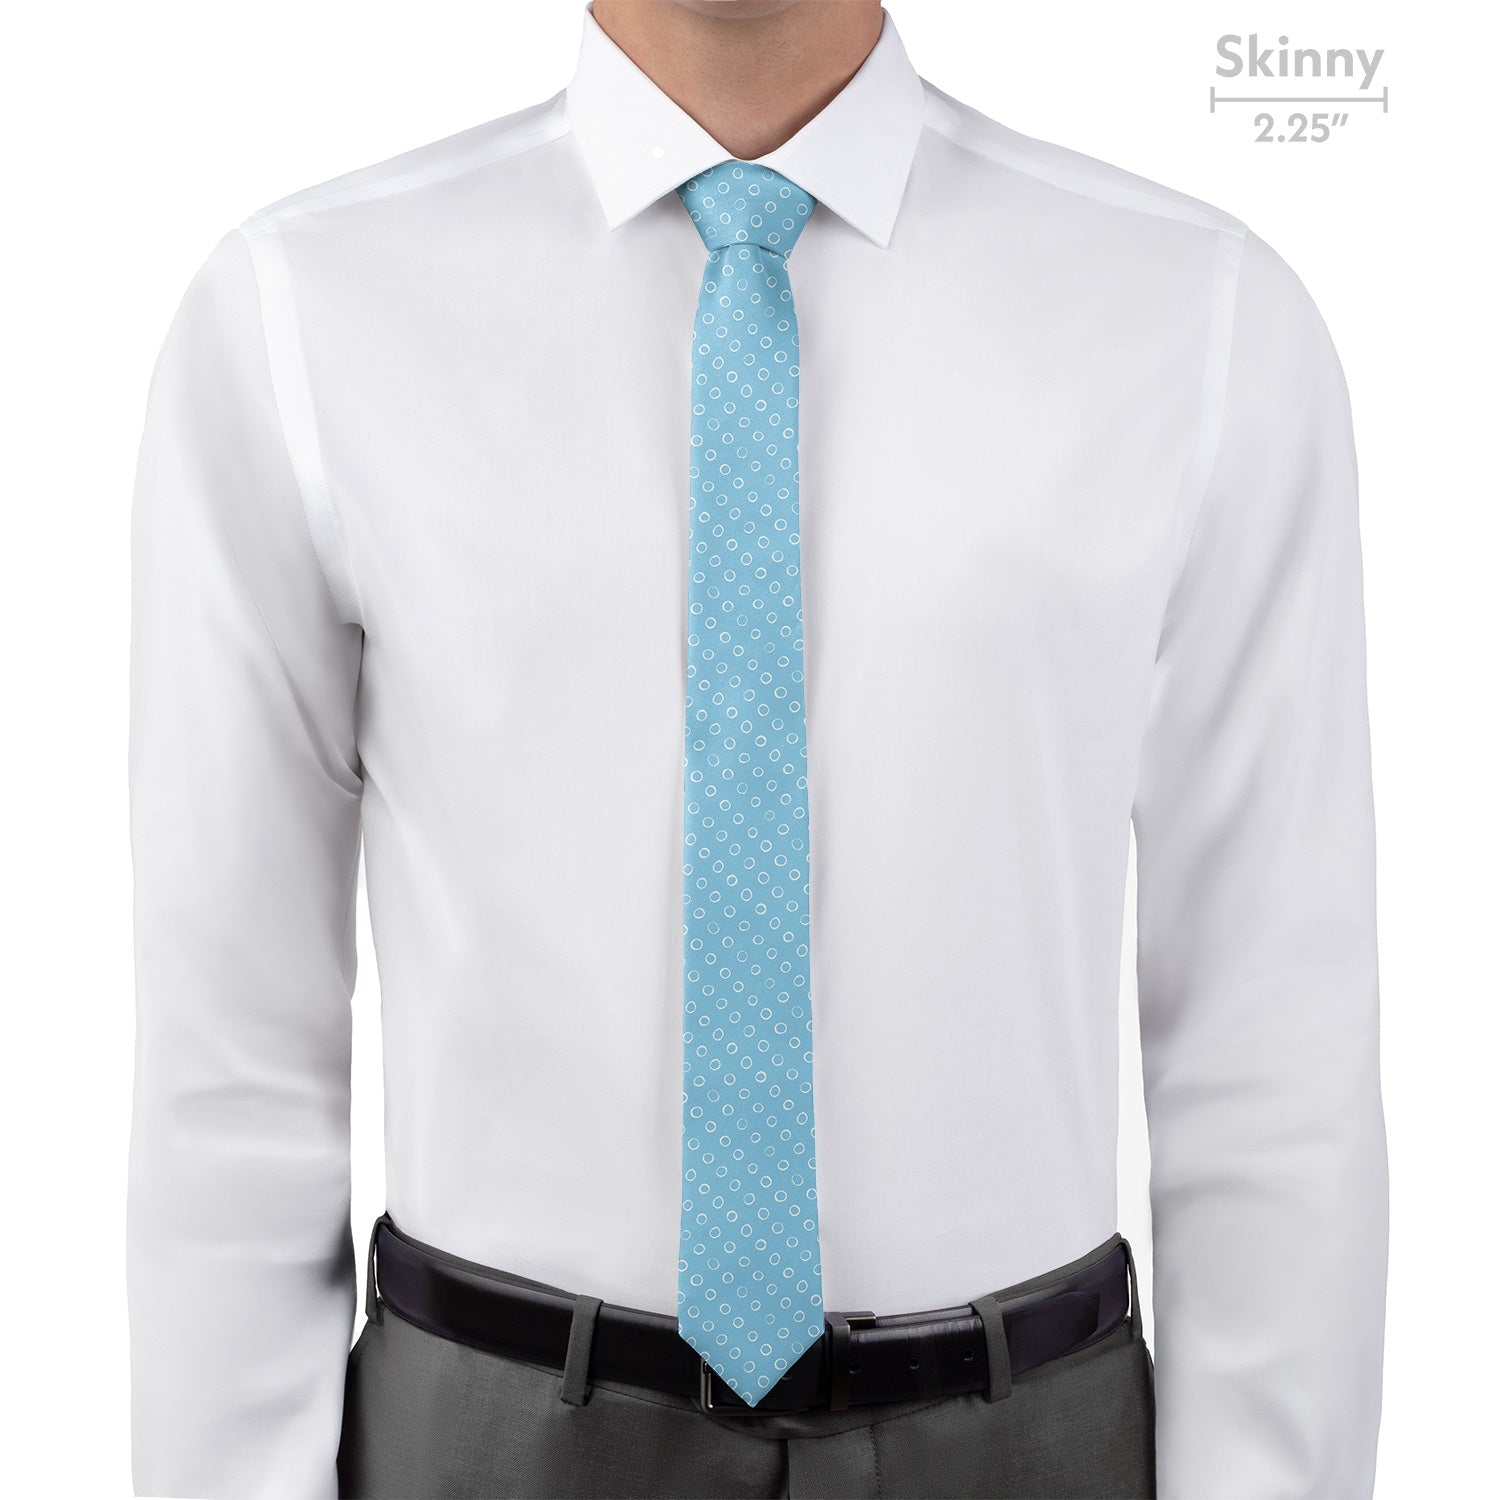 Mod Dots Necktie - Skinny 2.25" -  - Knotty Tie Co.